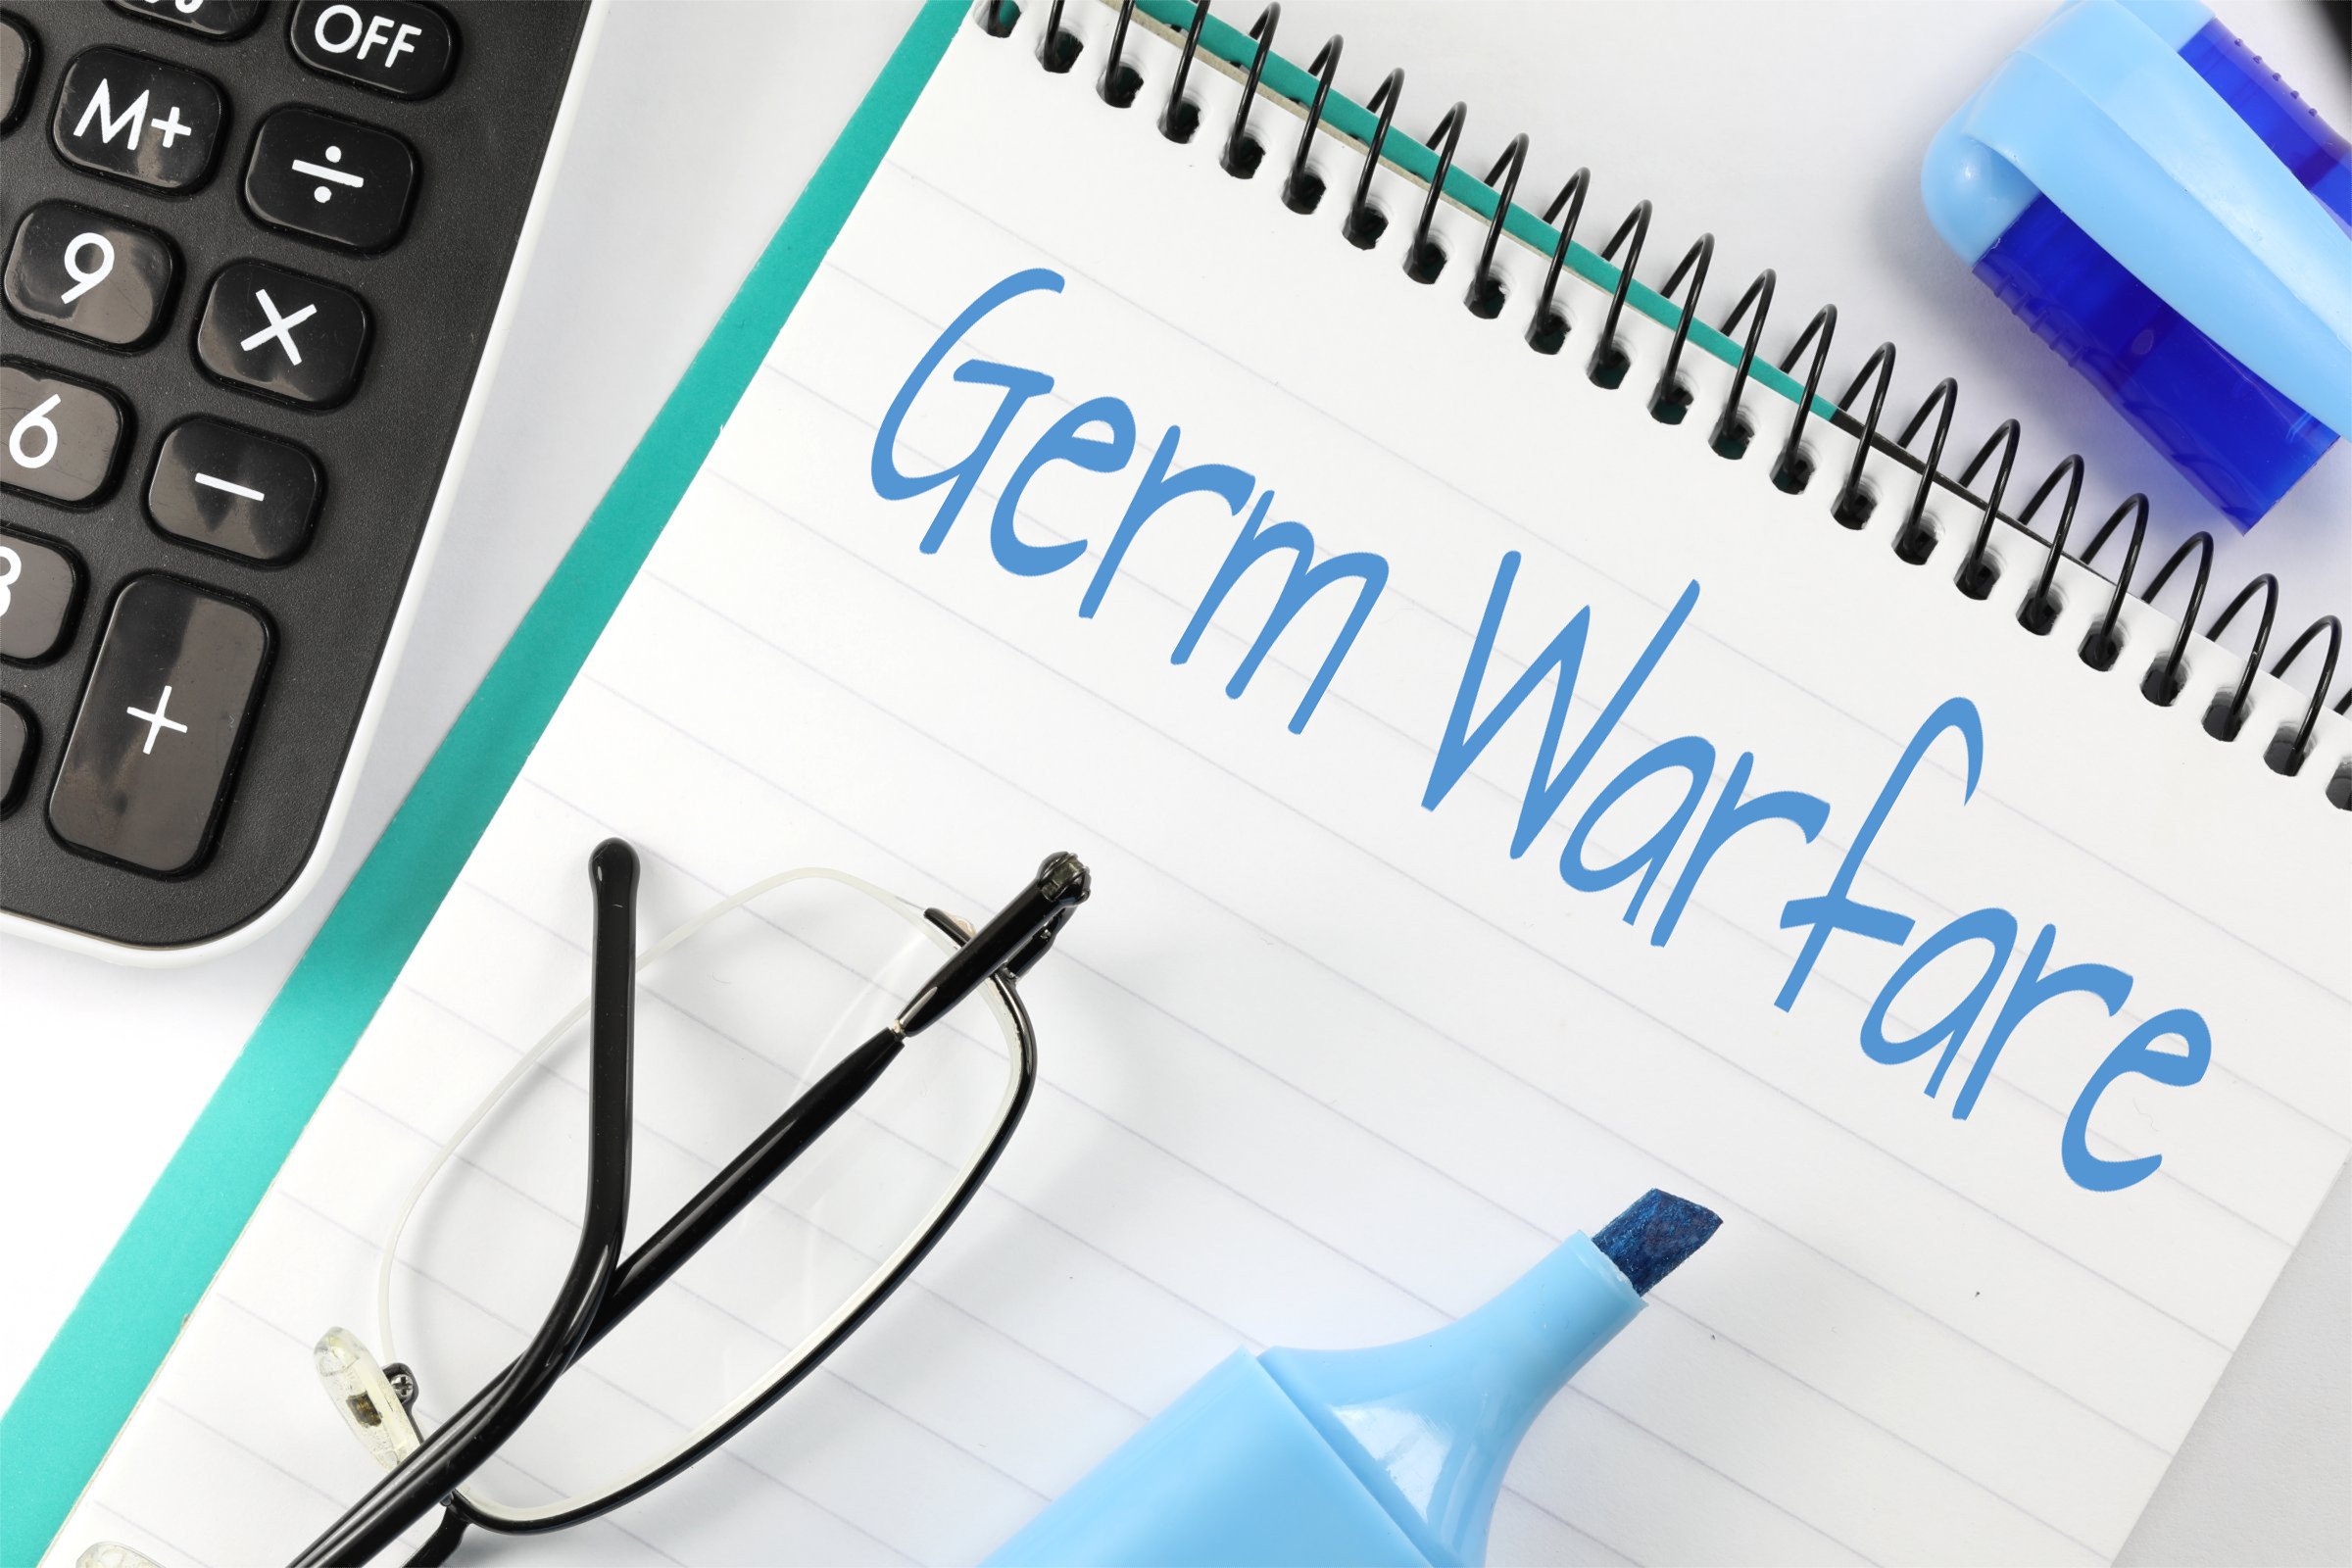 germ warfare